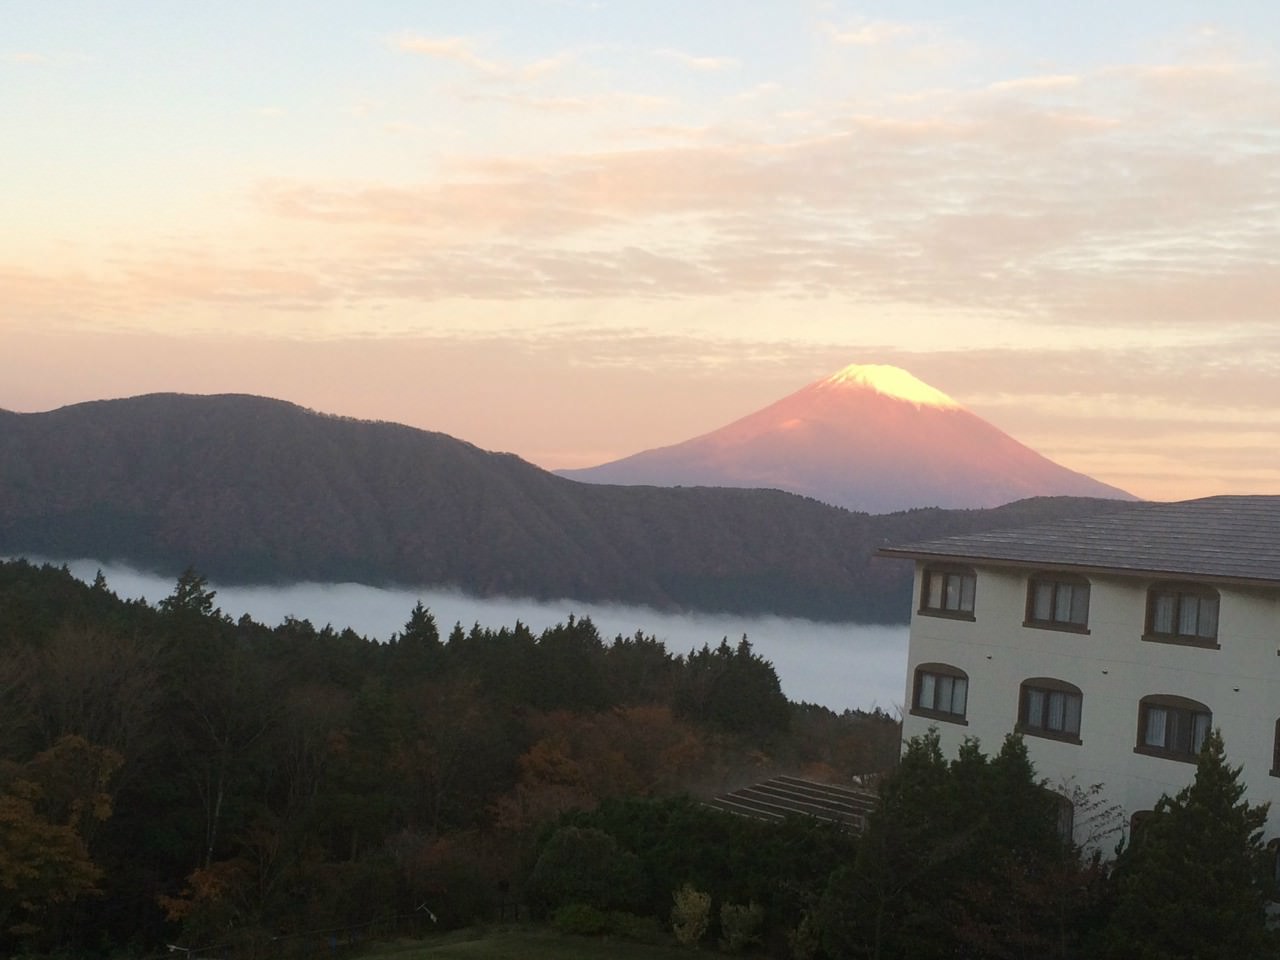 早晨, 紅富士山!